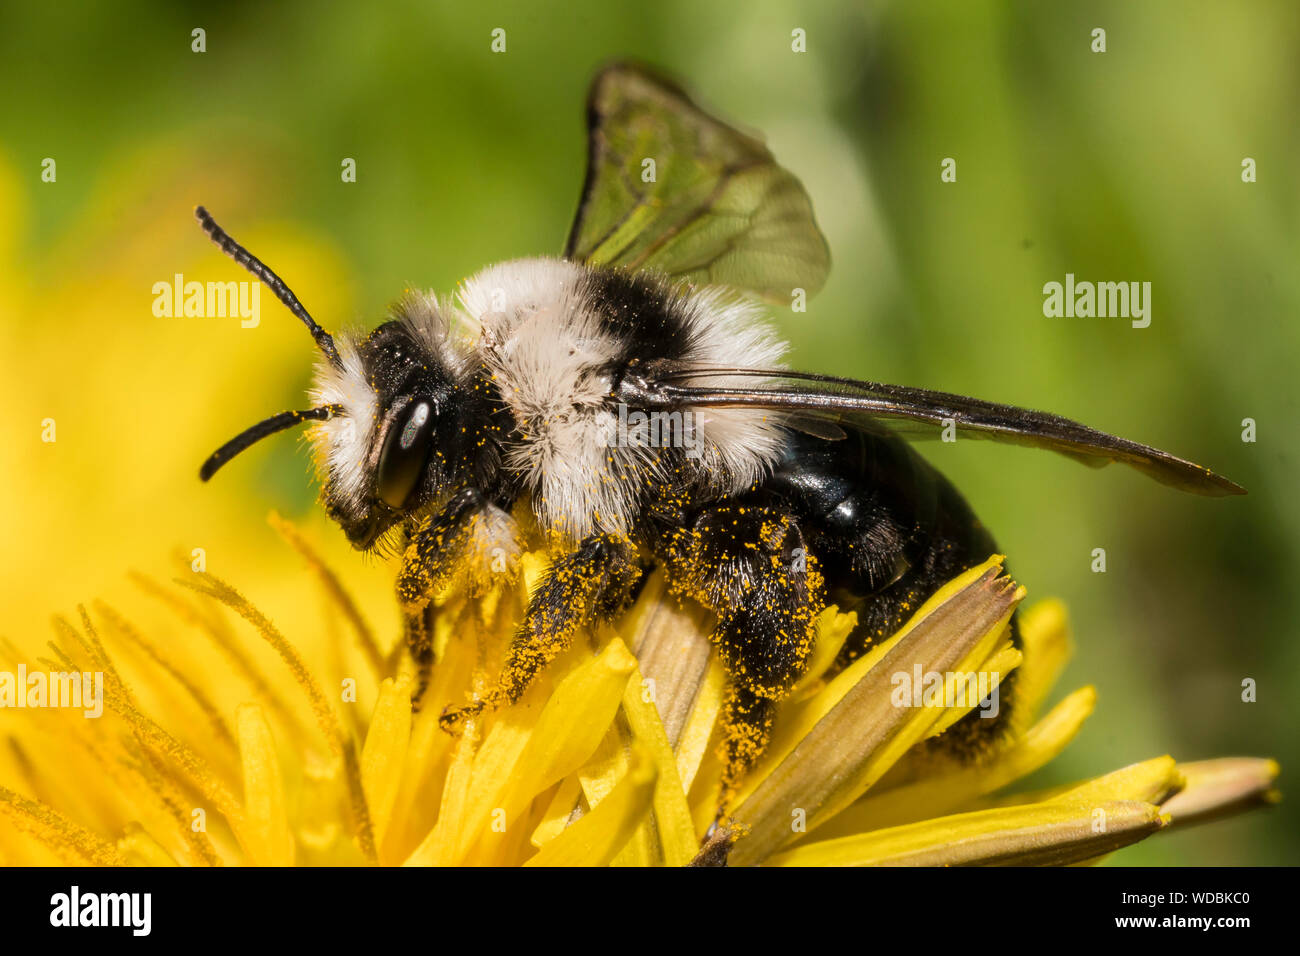 Eine Hummel sammelt Blütennektar und Pollen klebt an ihren Beinen / A bumblebee collects nectar on a flower and pollen grains are sticking to its legs Stock Photo